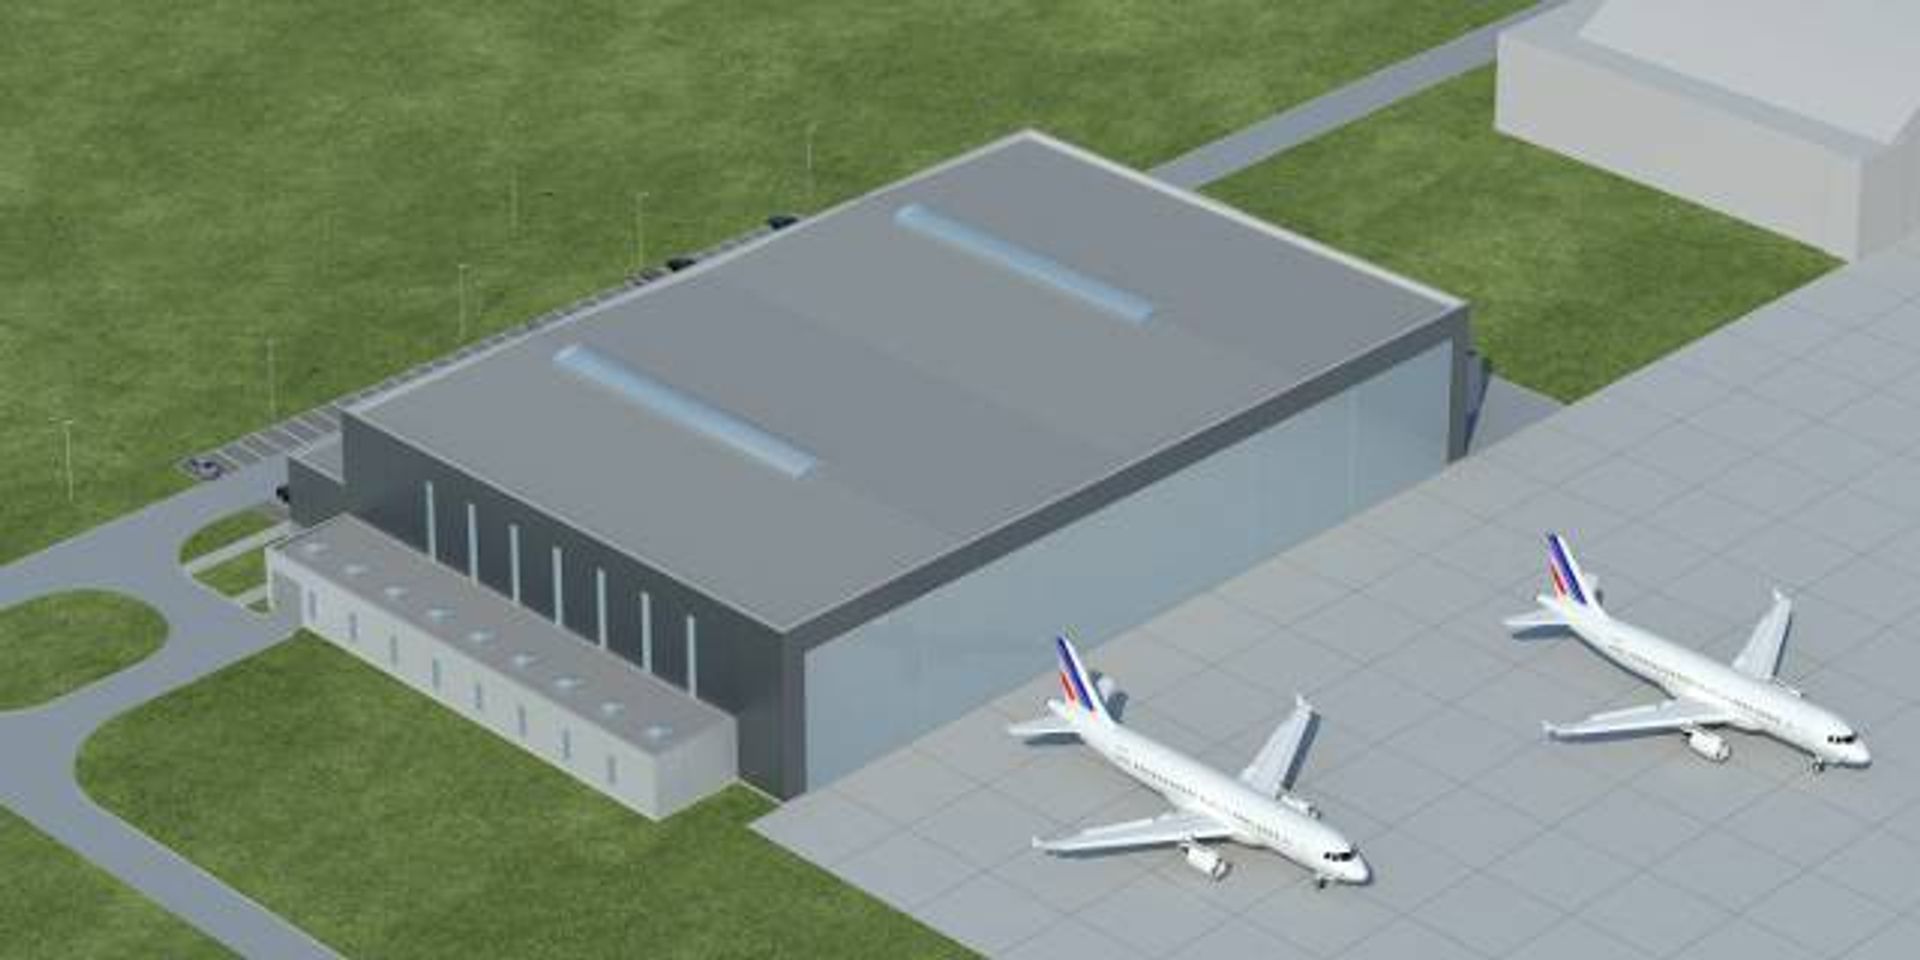  Otwarcie bazy technicznej w nowym hangarze Katowice Airport